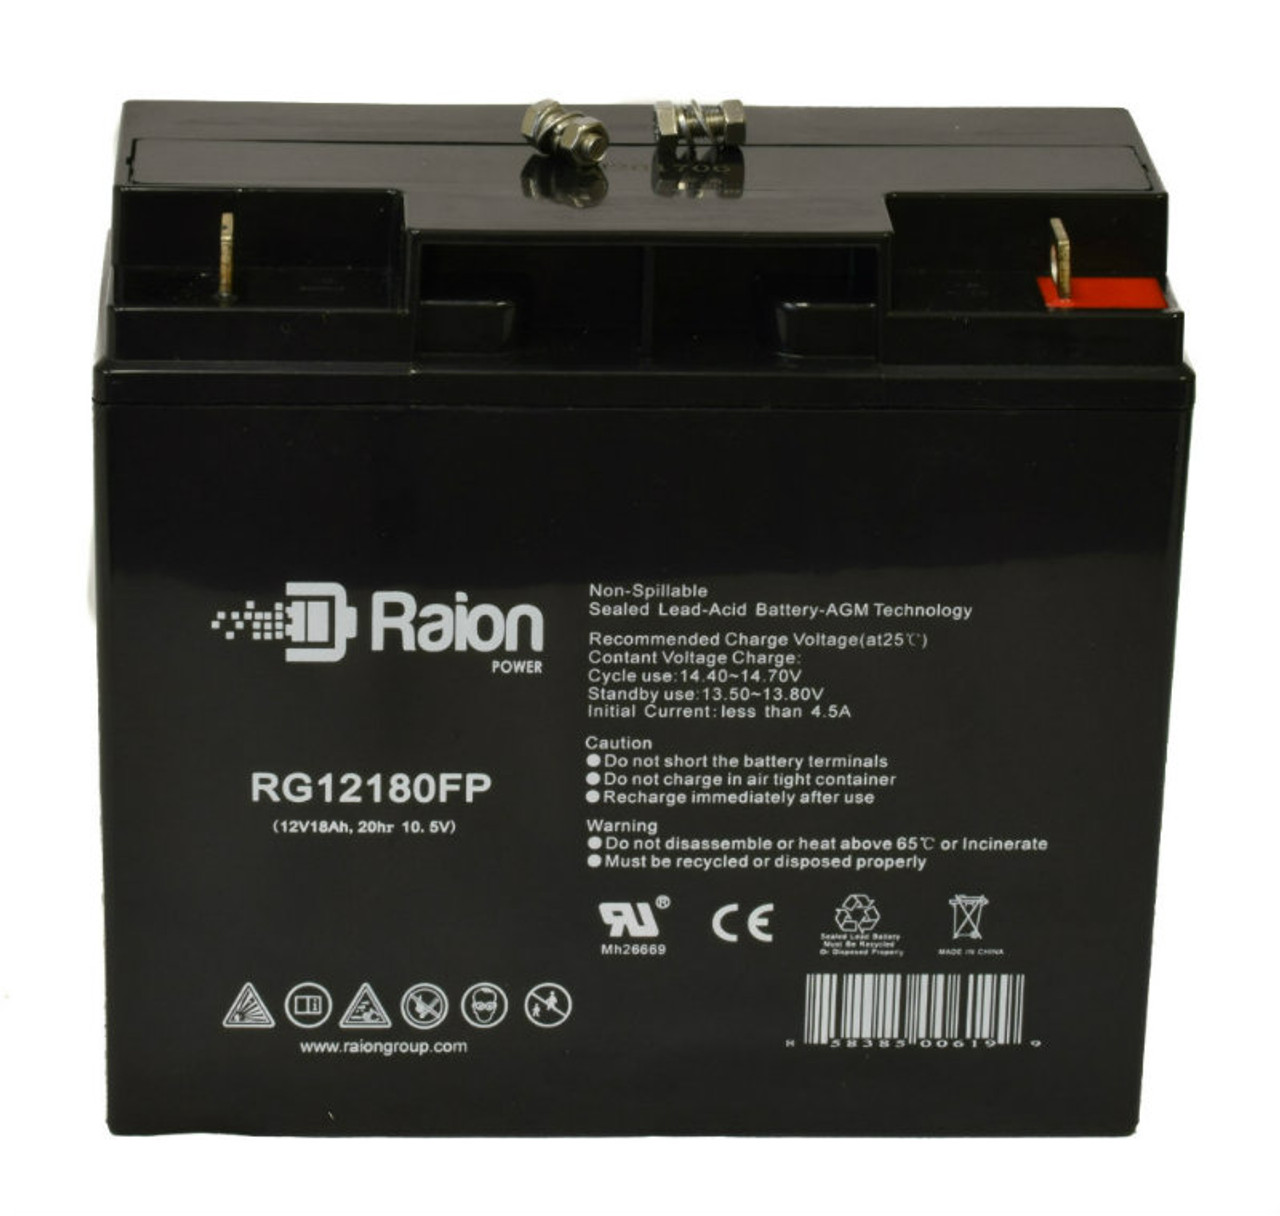 Raion Power RG12180FP 12V 18Ah Lead Acid Battery for Tysonic TY12-20